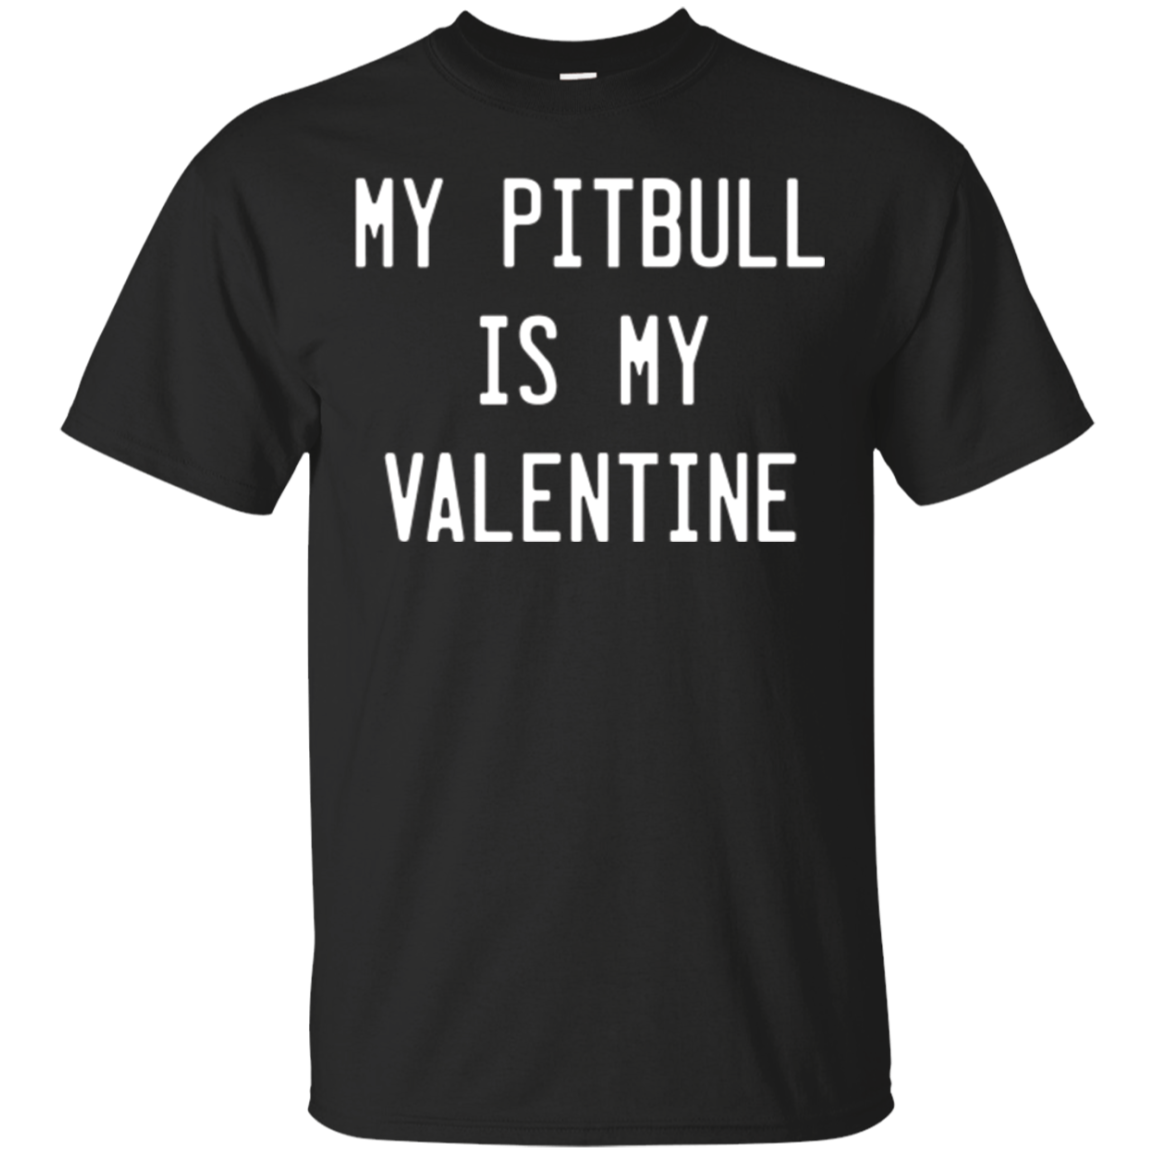 Pitbull Valentines Day Gift, My Pitbull Is My Valentine Shirts